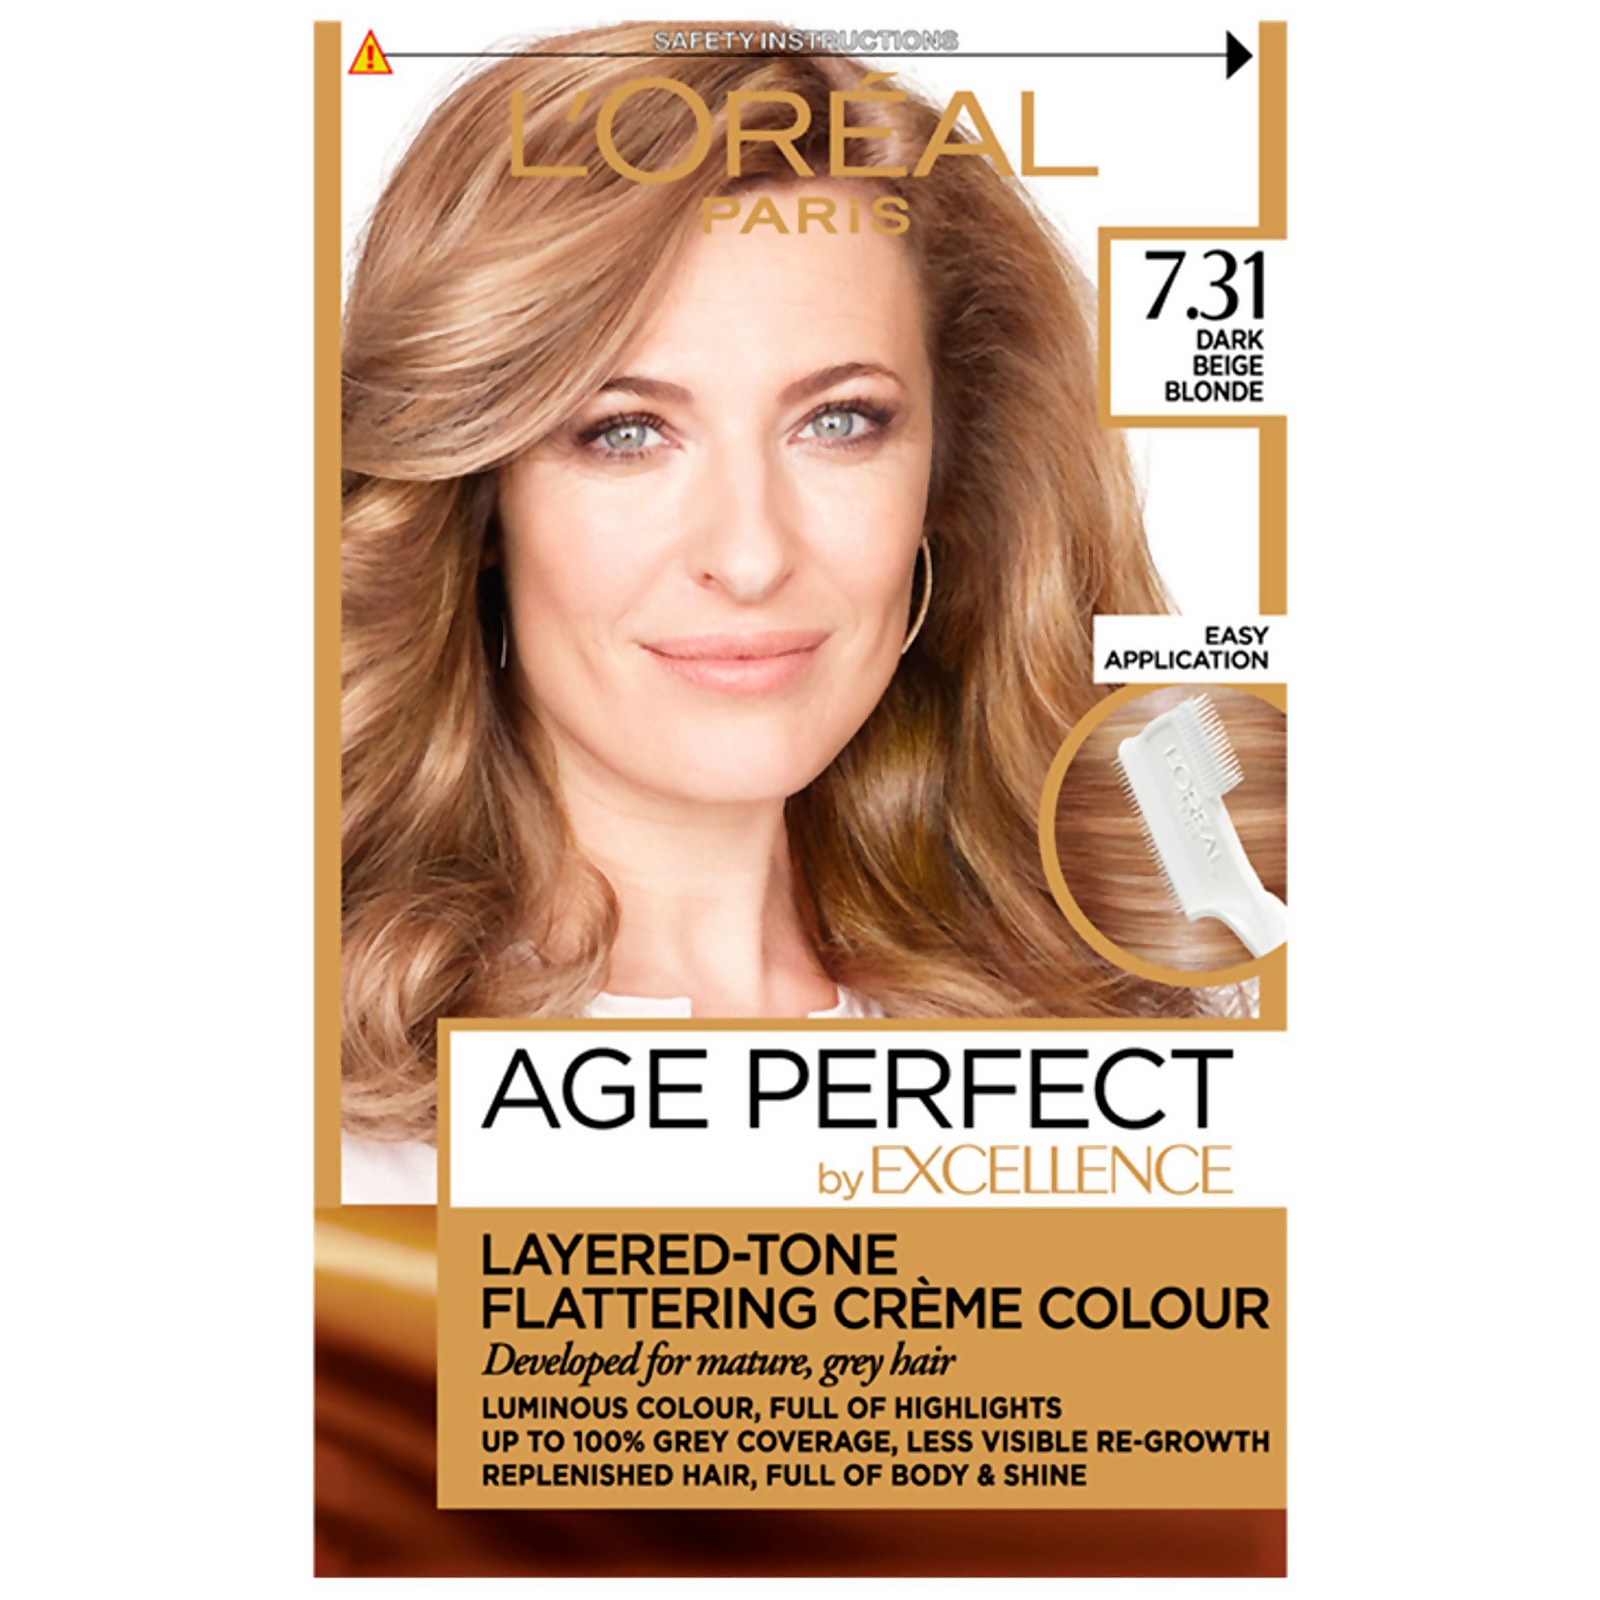 L'Oréal Paris Age Perfect Hair Dye (Various Shades) - 7.31 Dark Beige Blonde